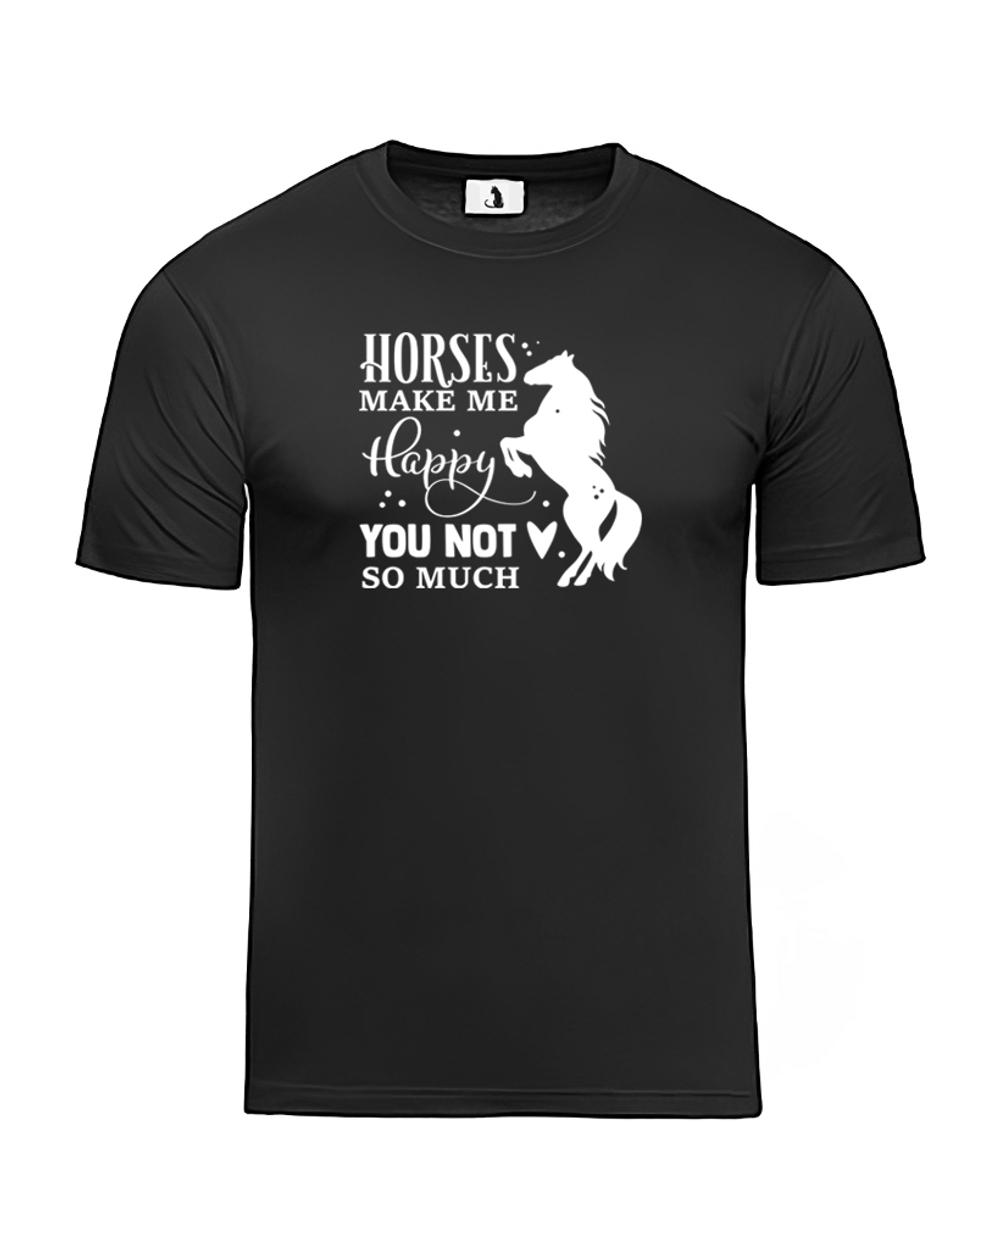 Футболка Horses make me happy unisex черная с белым рисунком